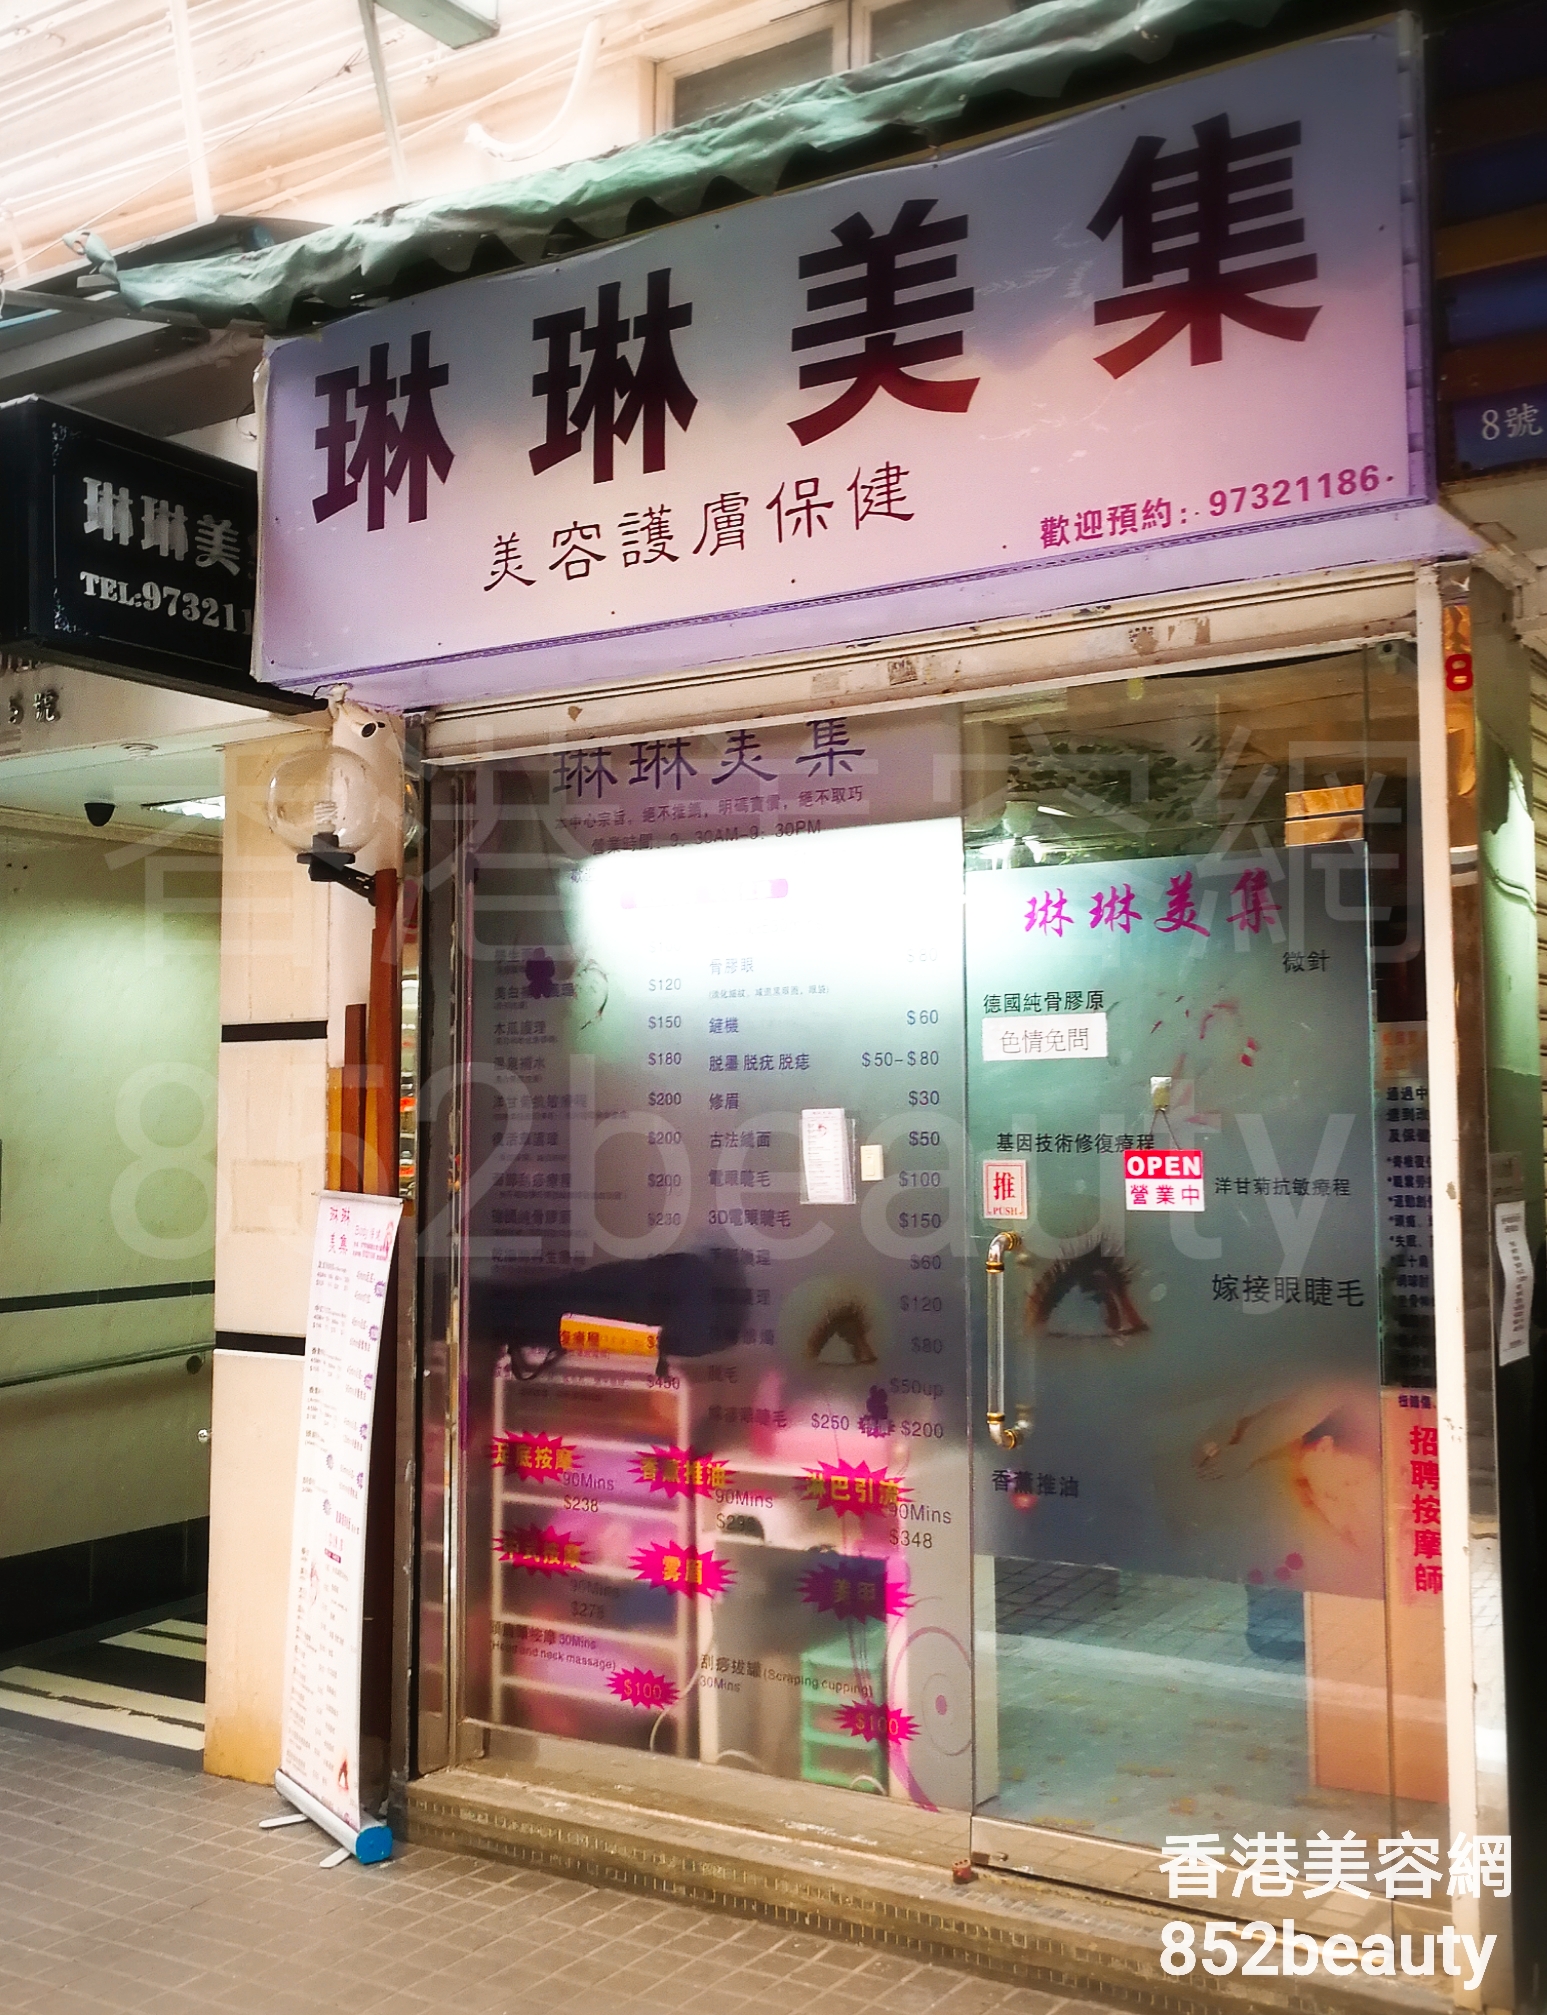 香港美容網 Hong Kong Beauty Salon 美容院 / 美容師: 琳琳美集